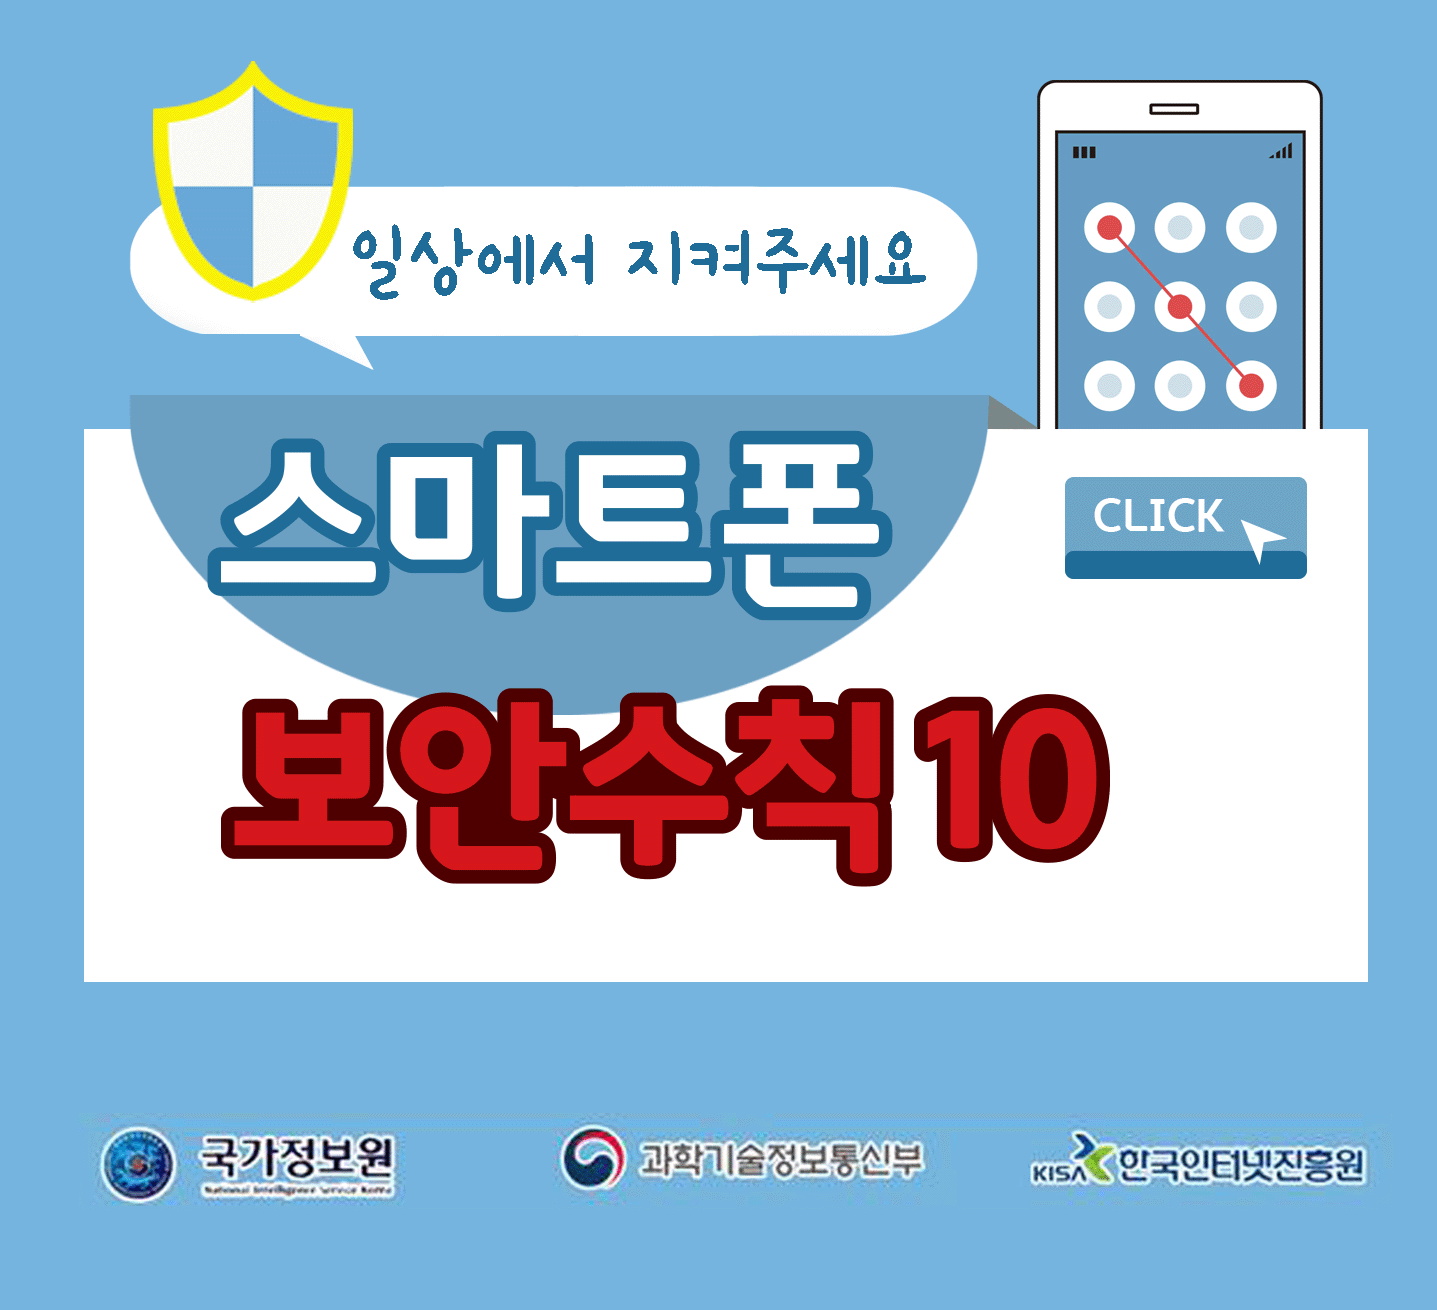 일상에서 지켜주세요
스마트폰 보안수칙 10 CLICK
국가정보원, 과학기술정보통신부, 한국인터넷진흥원;jsessionid=E68E1F6D64FF5FD679EF462645A683A7